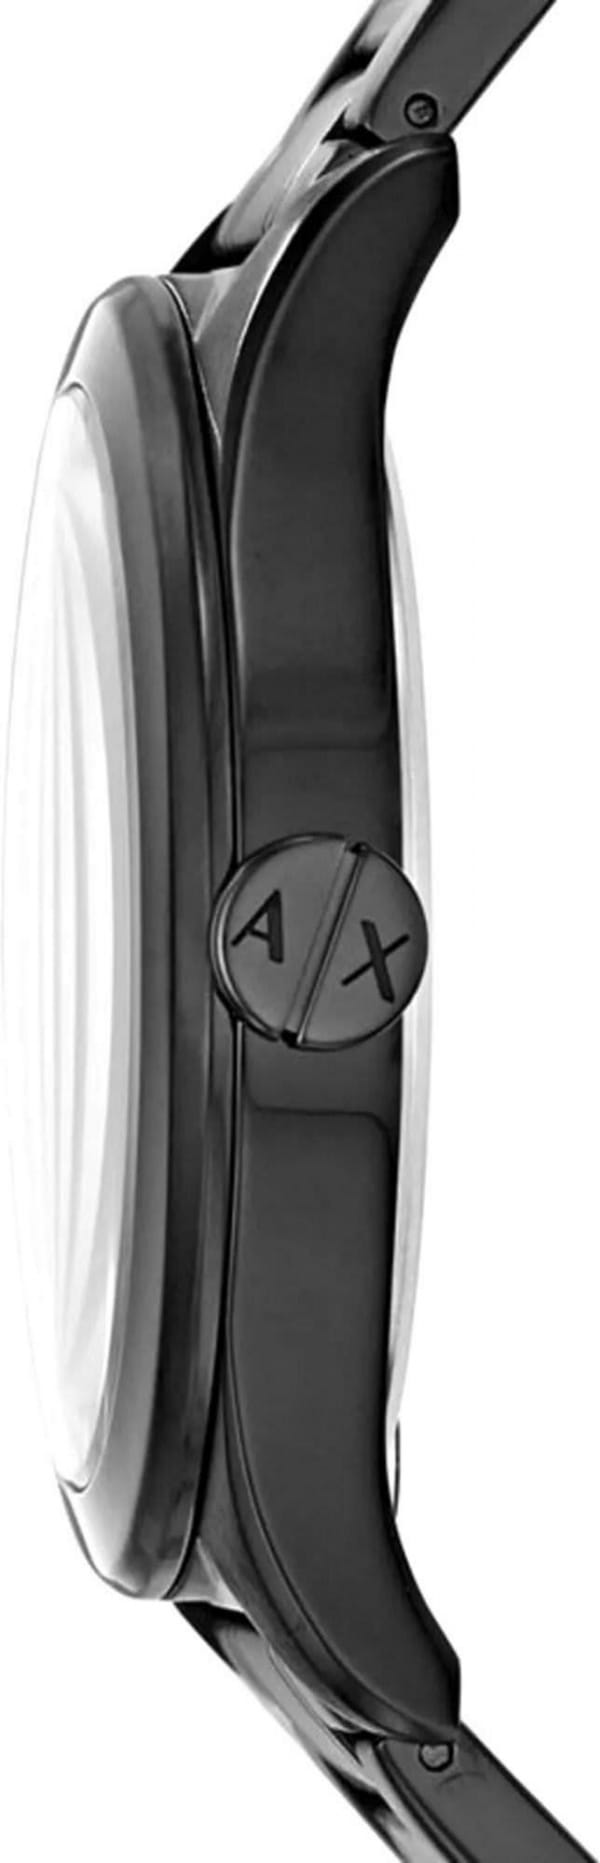 Наручные часы Armani Exchange AX7102 фото 3